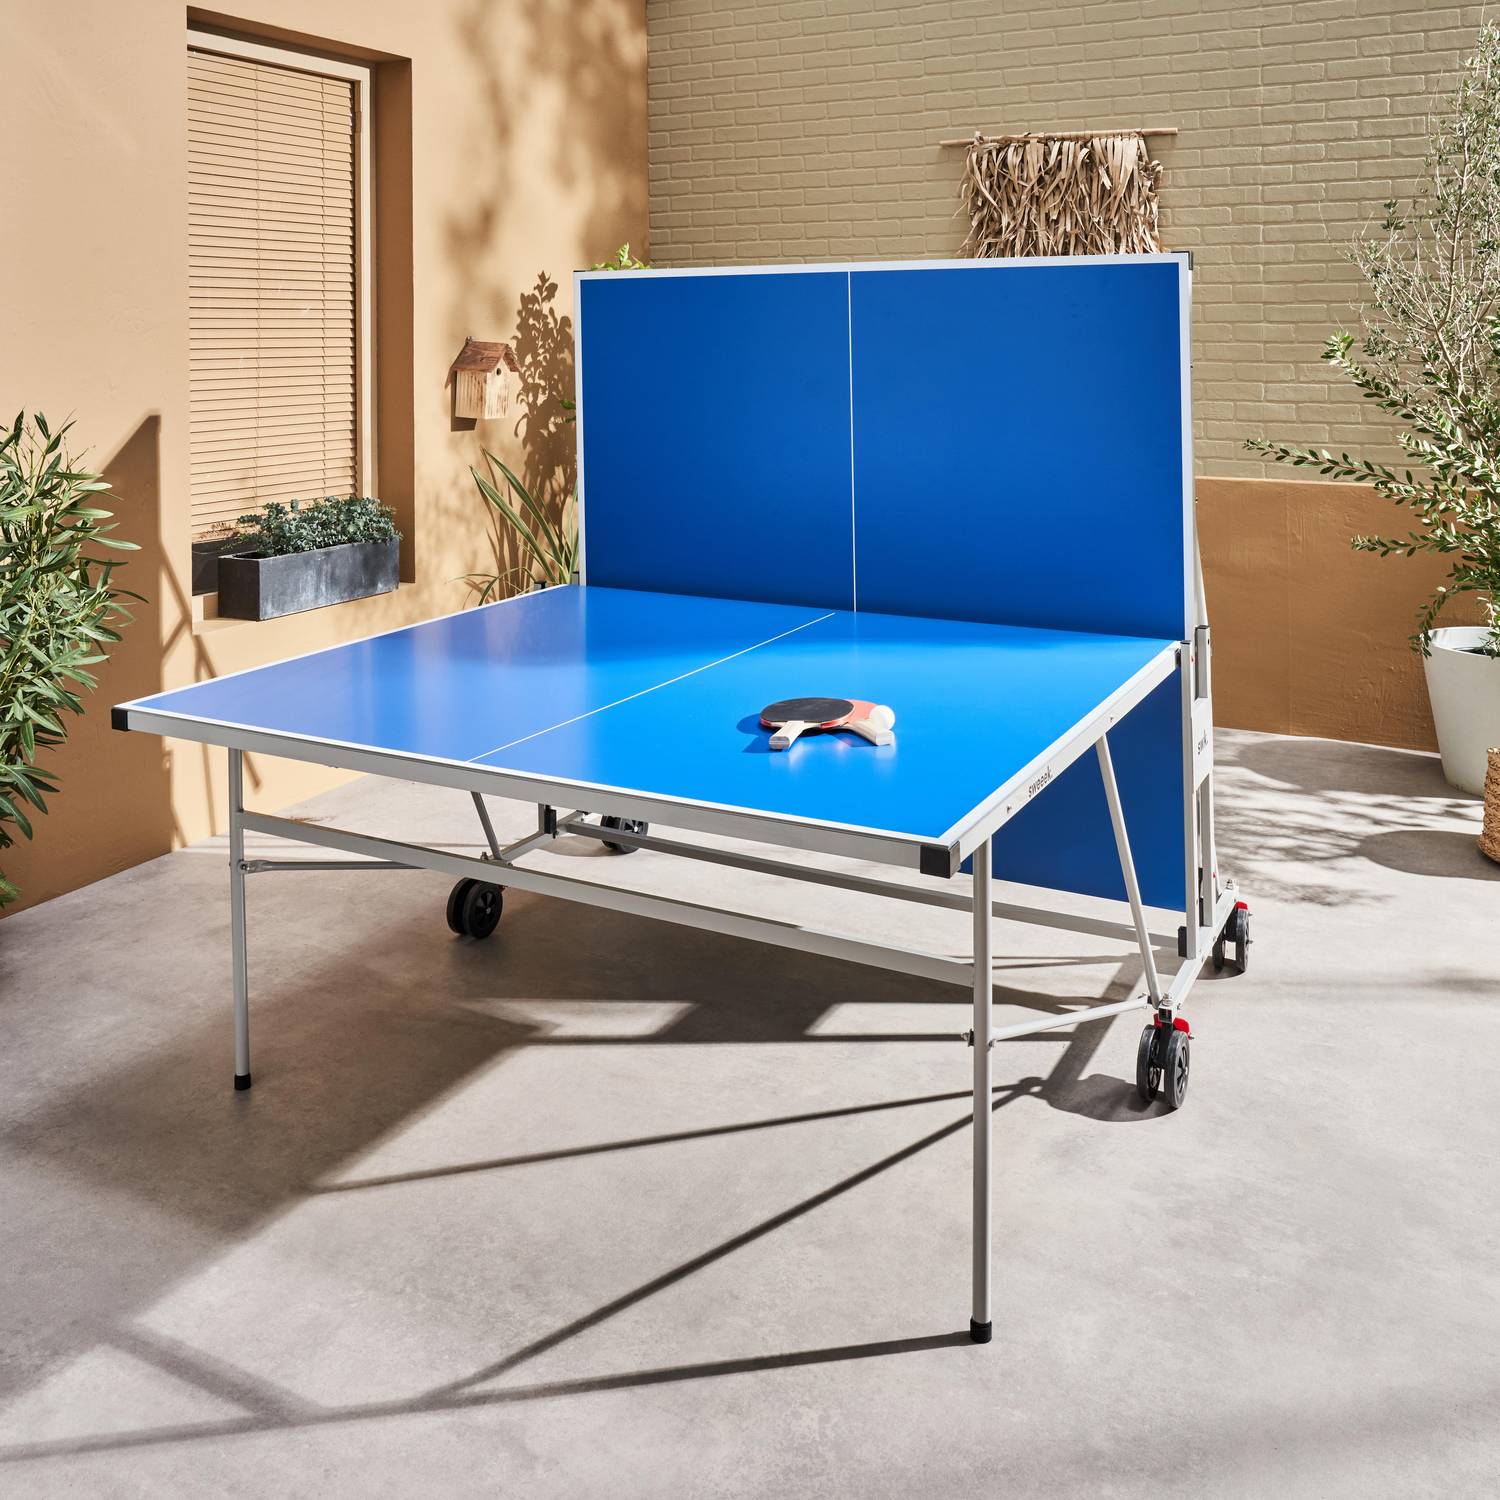 Table de ping pong OUTDOOR bleue - table pliable avec 4 raquettes et 6 balles, pour utilisation extérieure, sport tennis de table Photo2